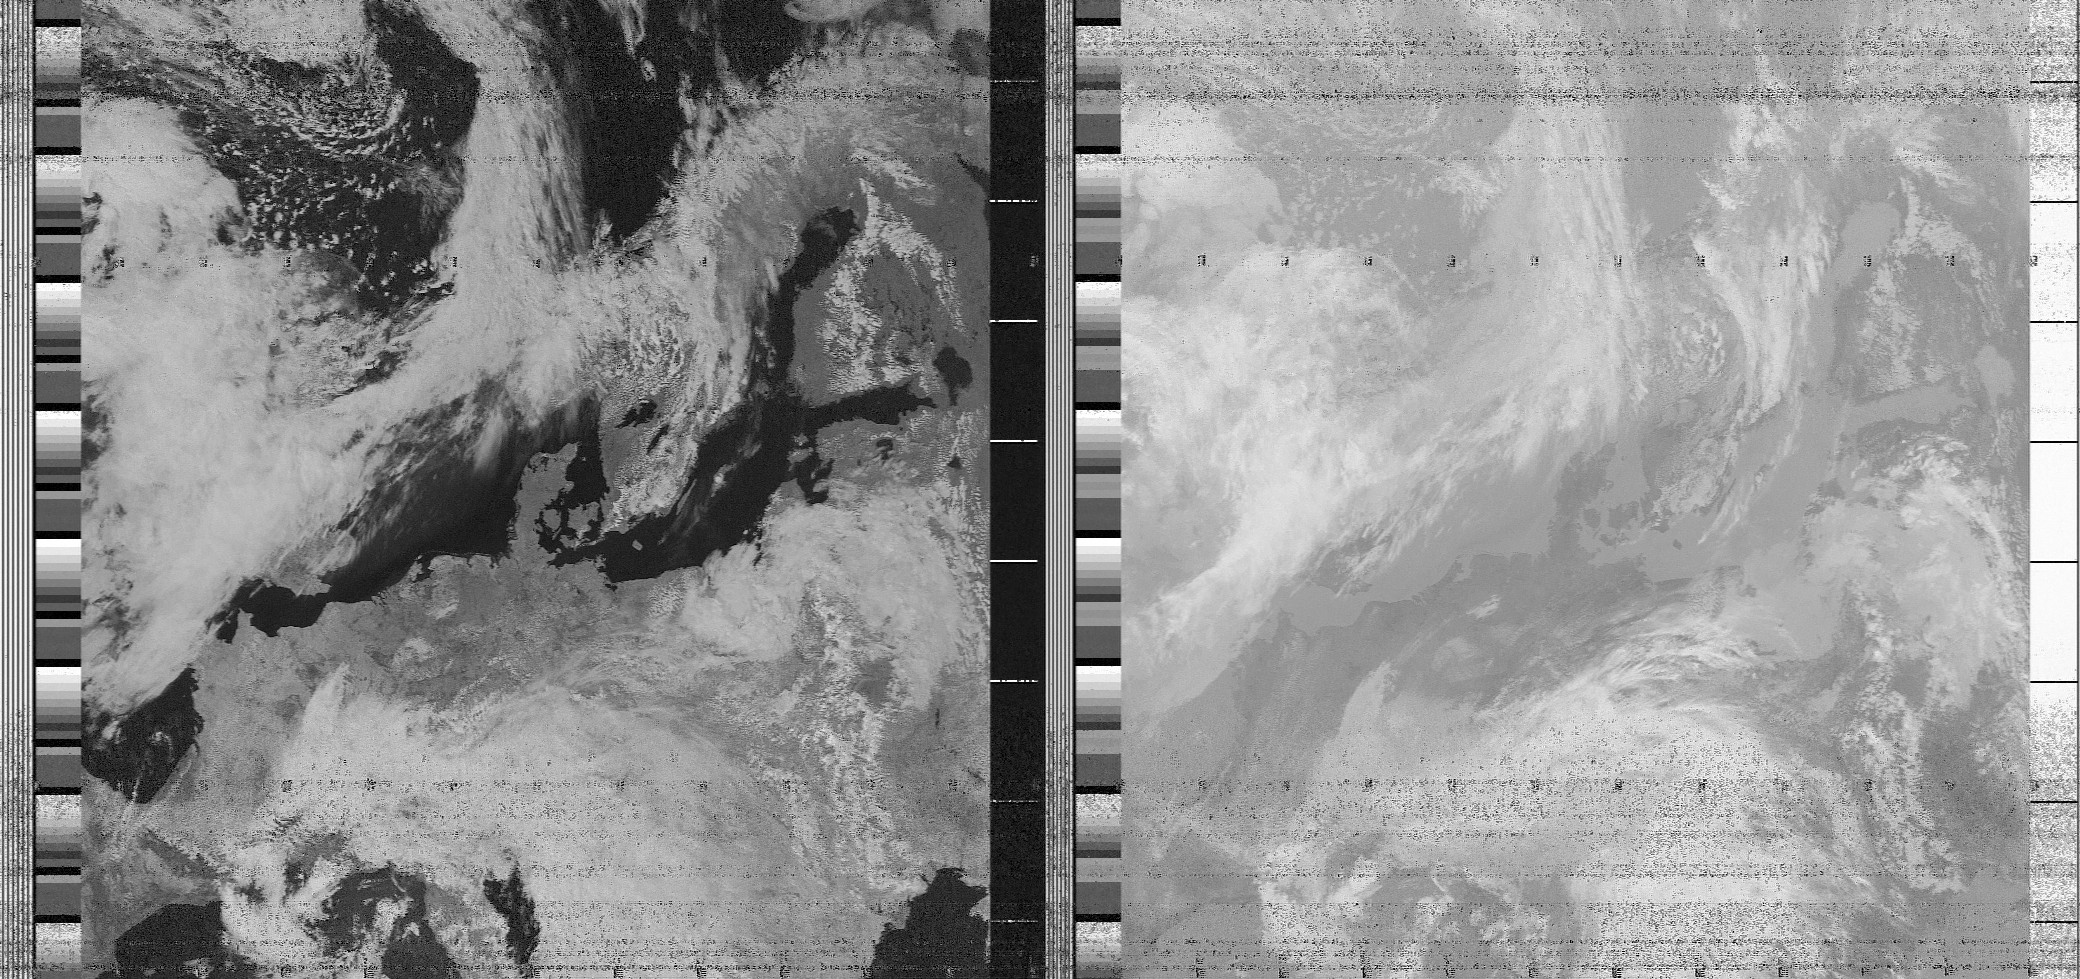 Alexandru Csete's NOAA imagery